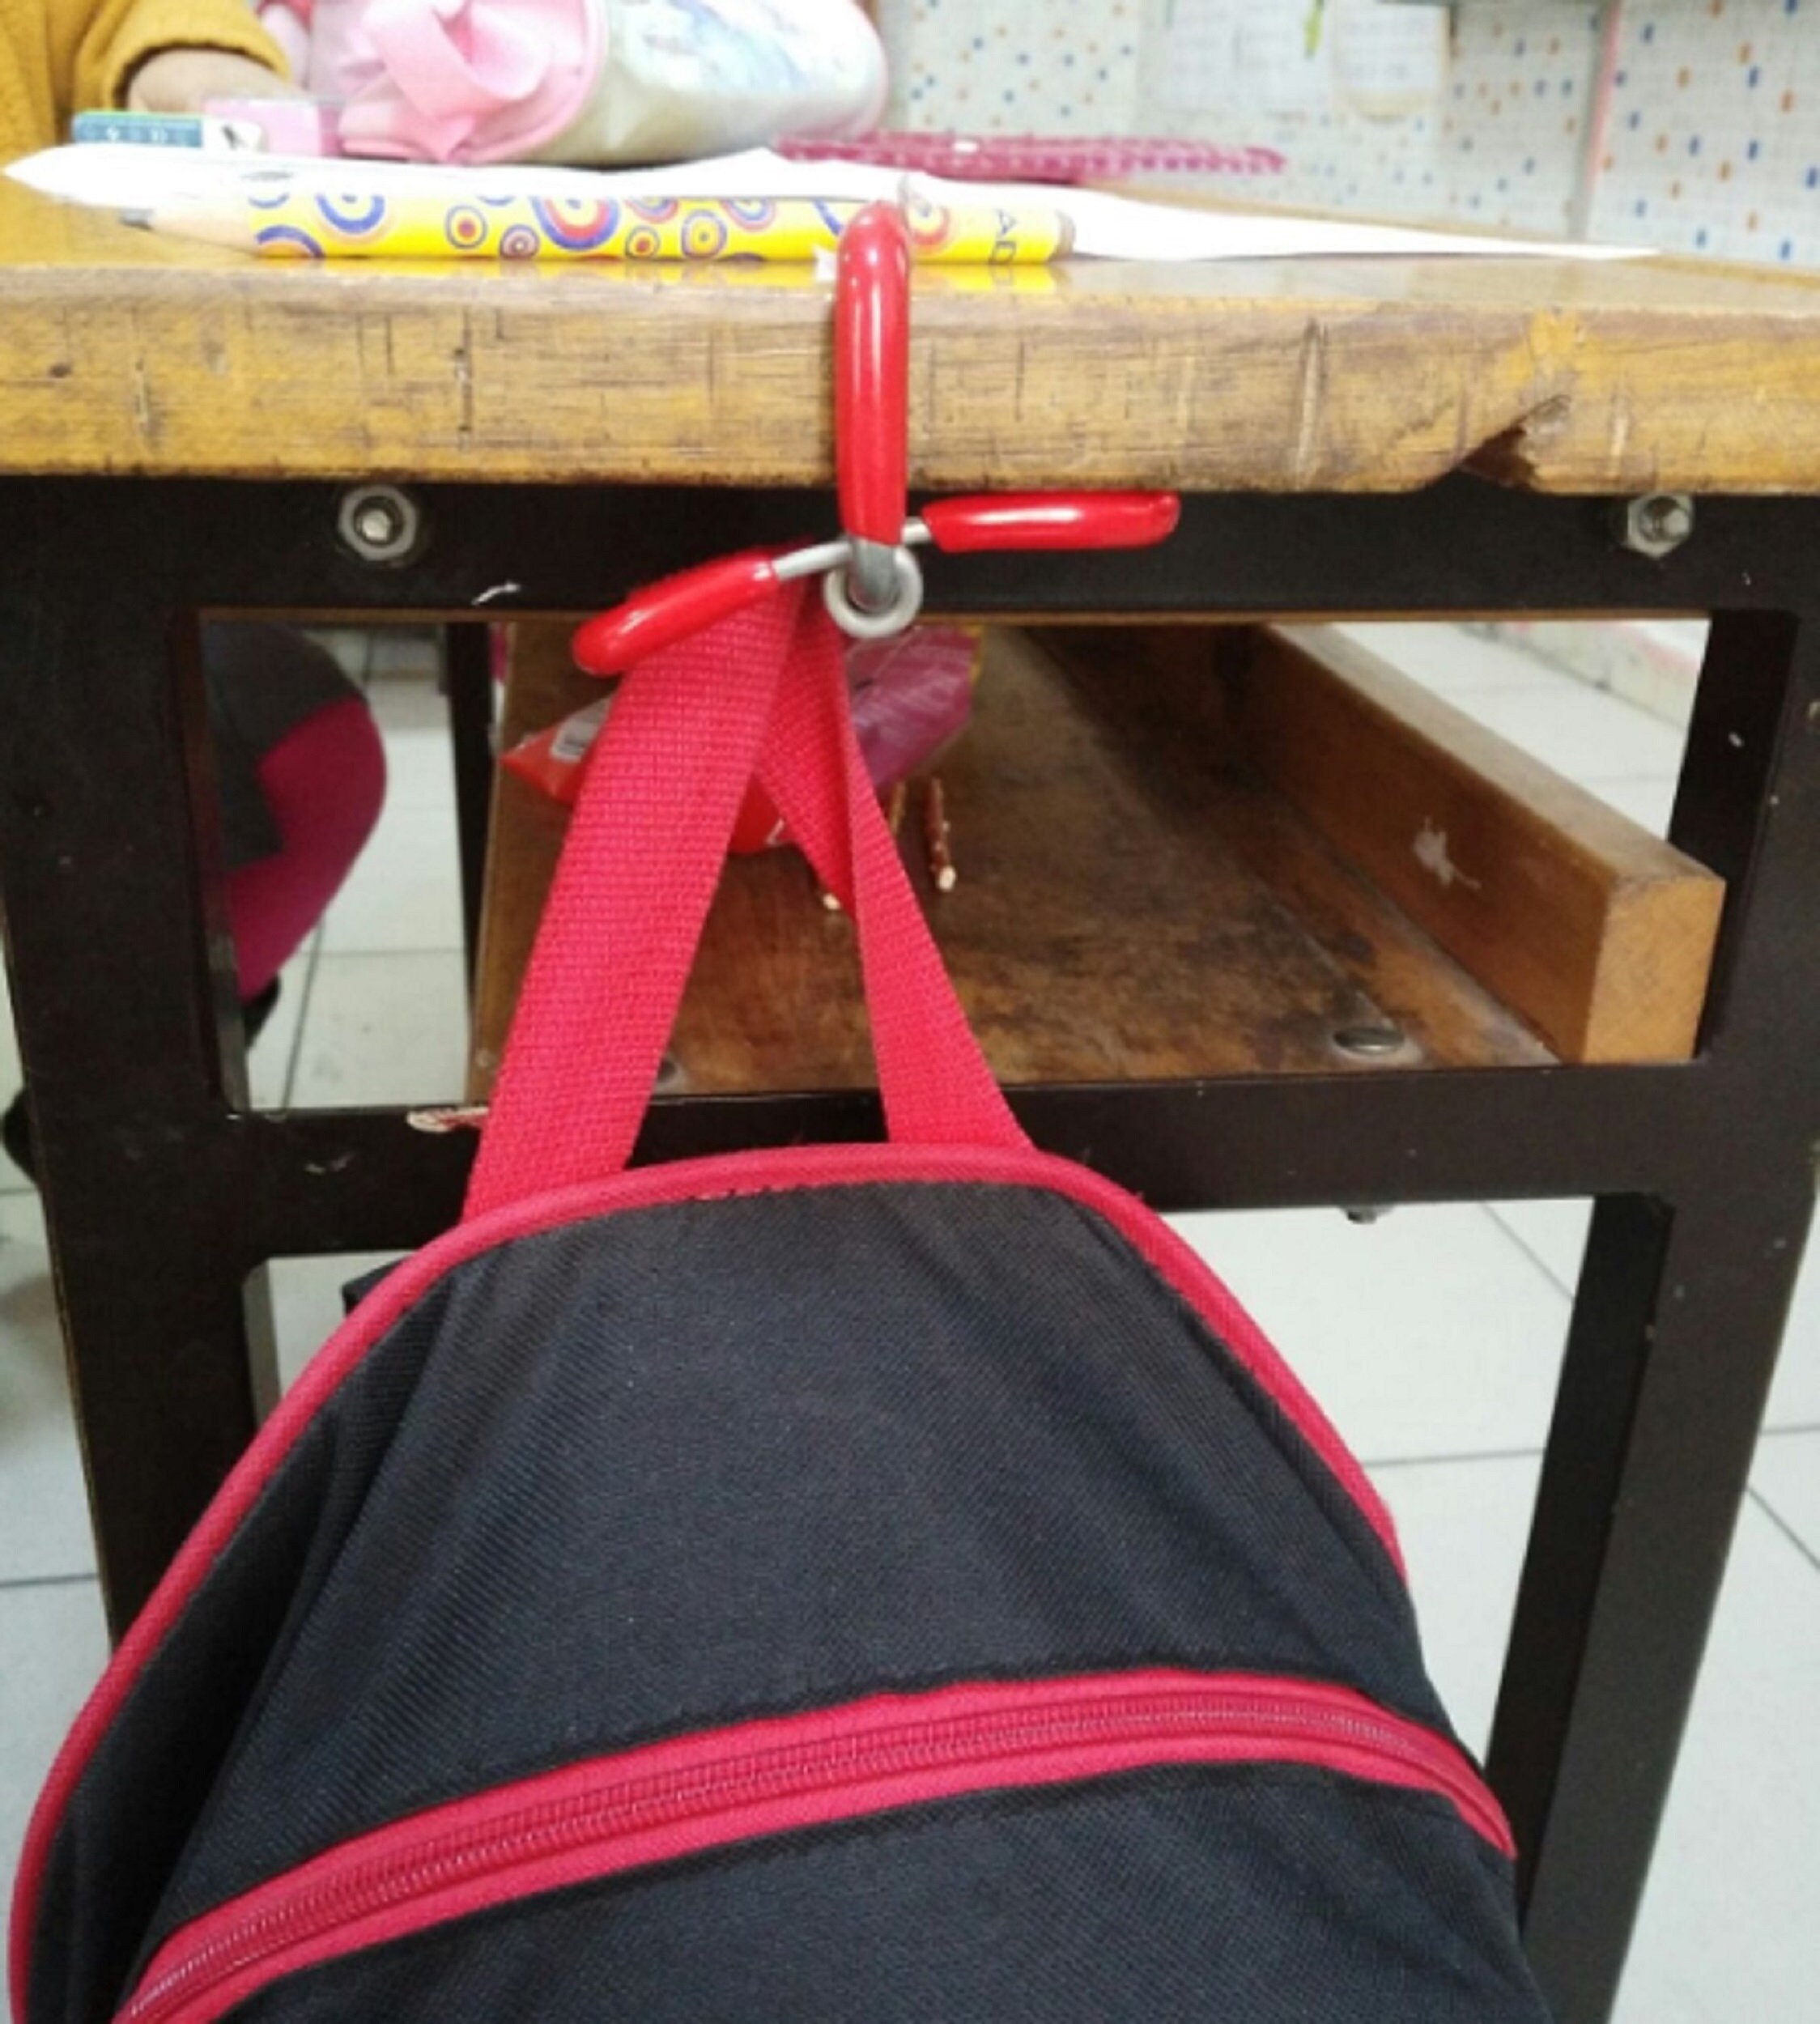 Tableside Purse Hanger  Under Desk Hook for Hanging Bag - Cute